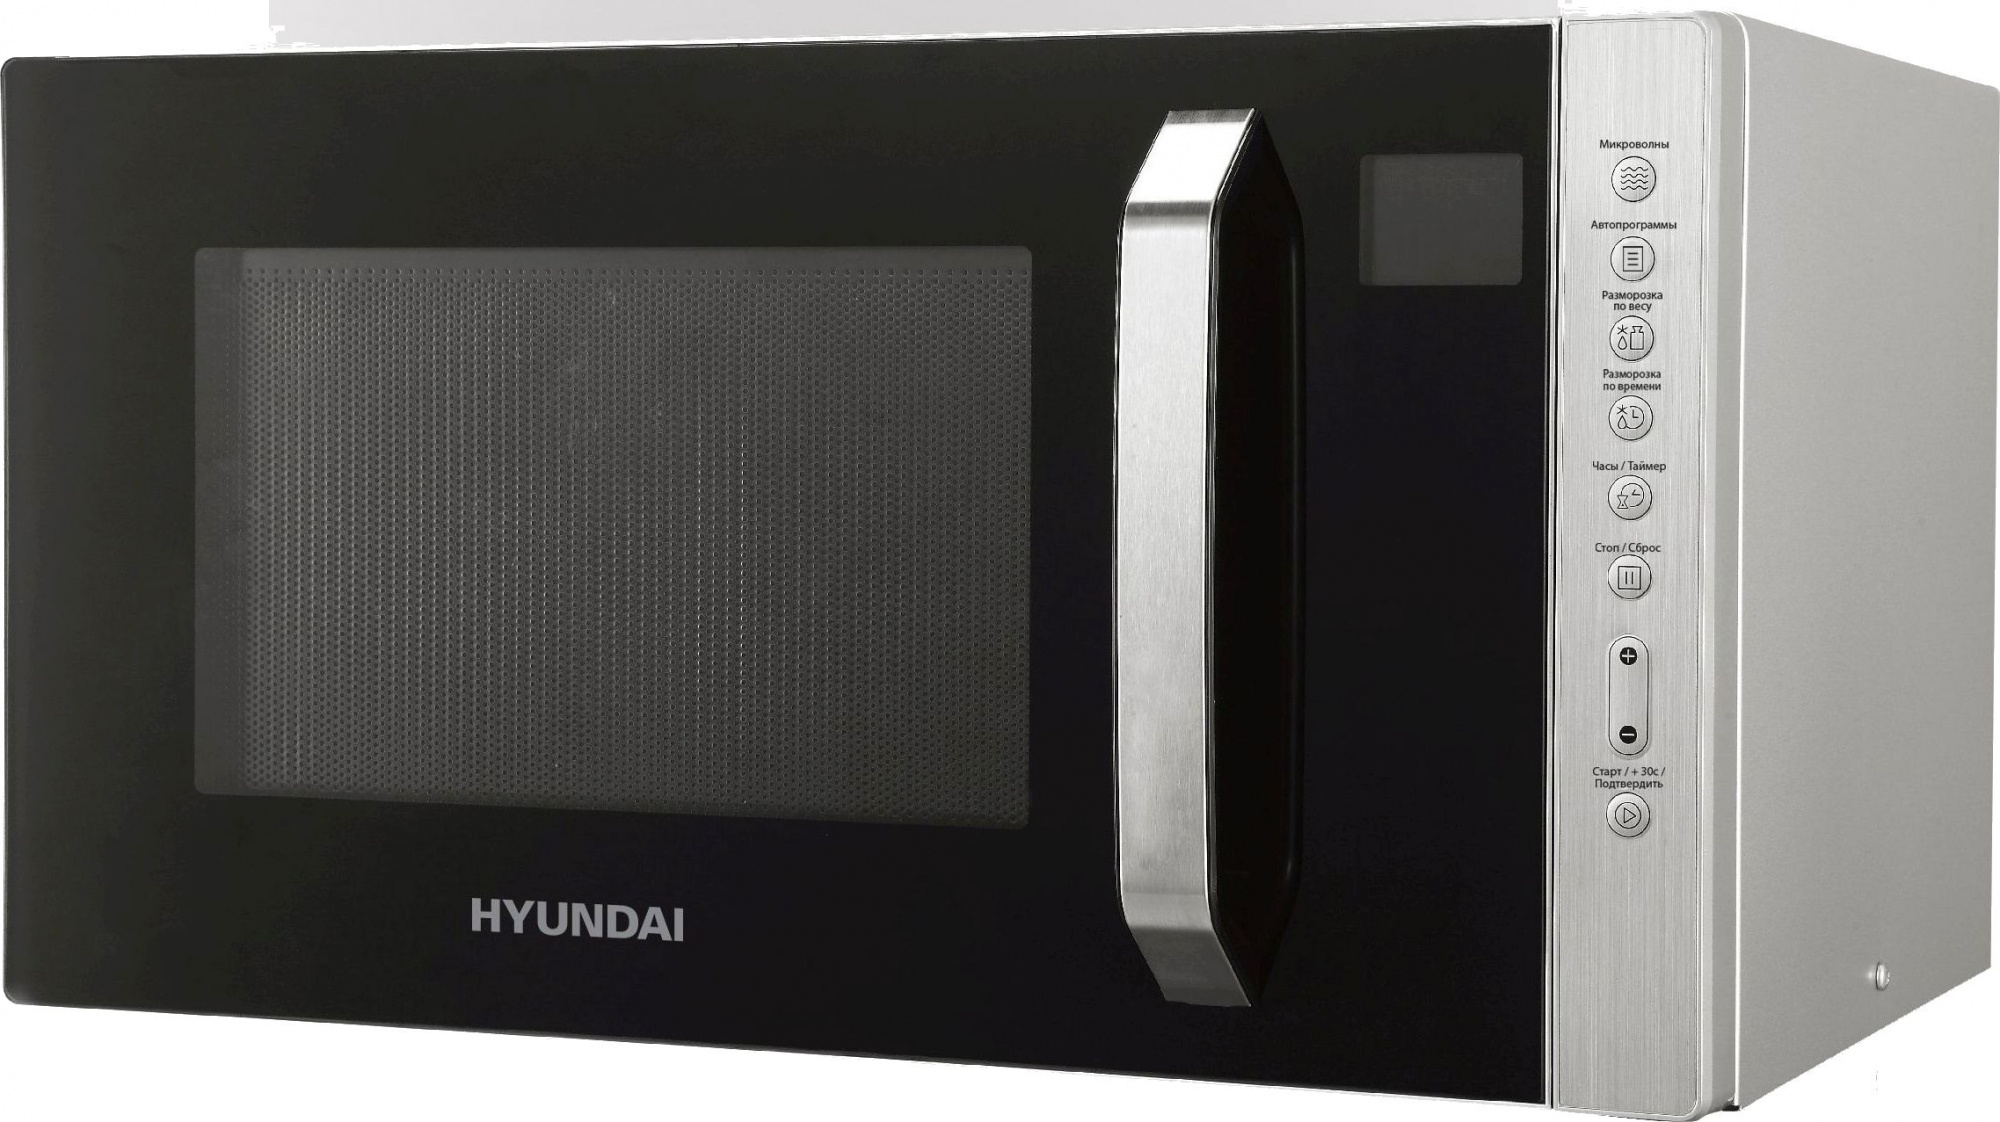 Свч hyundai. Микроволновая печь Hyundai HYM-m2001. Микроволновая печь Hyundai HYM-m2066, 800вт, 23л, серебристый. Микроволновая печь Hyundai HYM-m2001 Silver. Микроволновка Хендай 800 Вт.